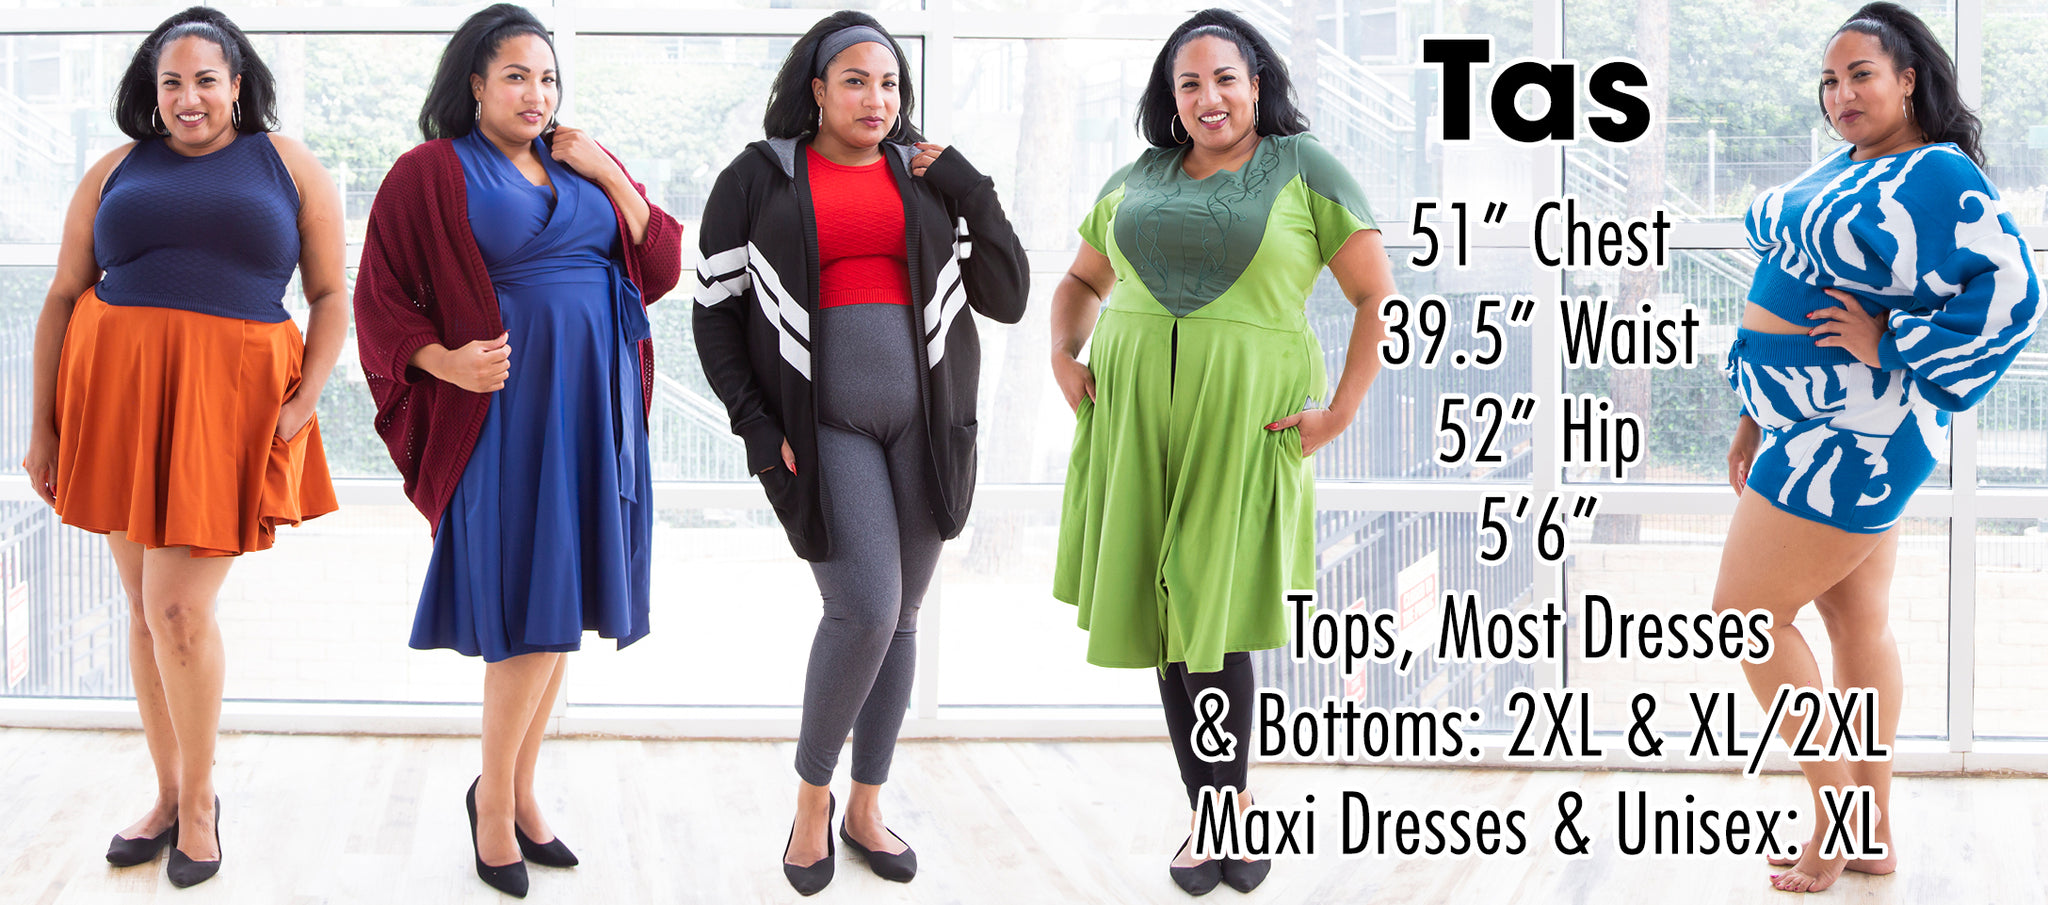 Tas - 51” Chest 39.5” Waist 52” Hip 5’6” Height - Tops, Most Dresses  & Bottoms: 2XL & XL/2XL - Maxi Dresses & Unisex: XL